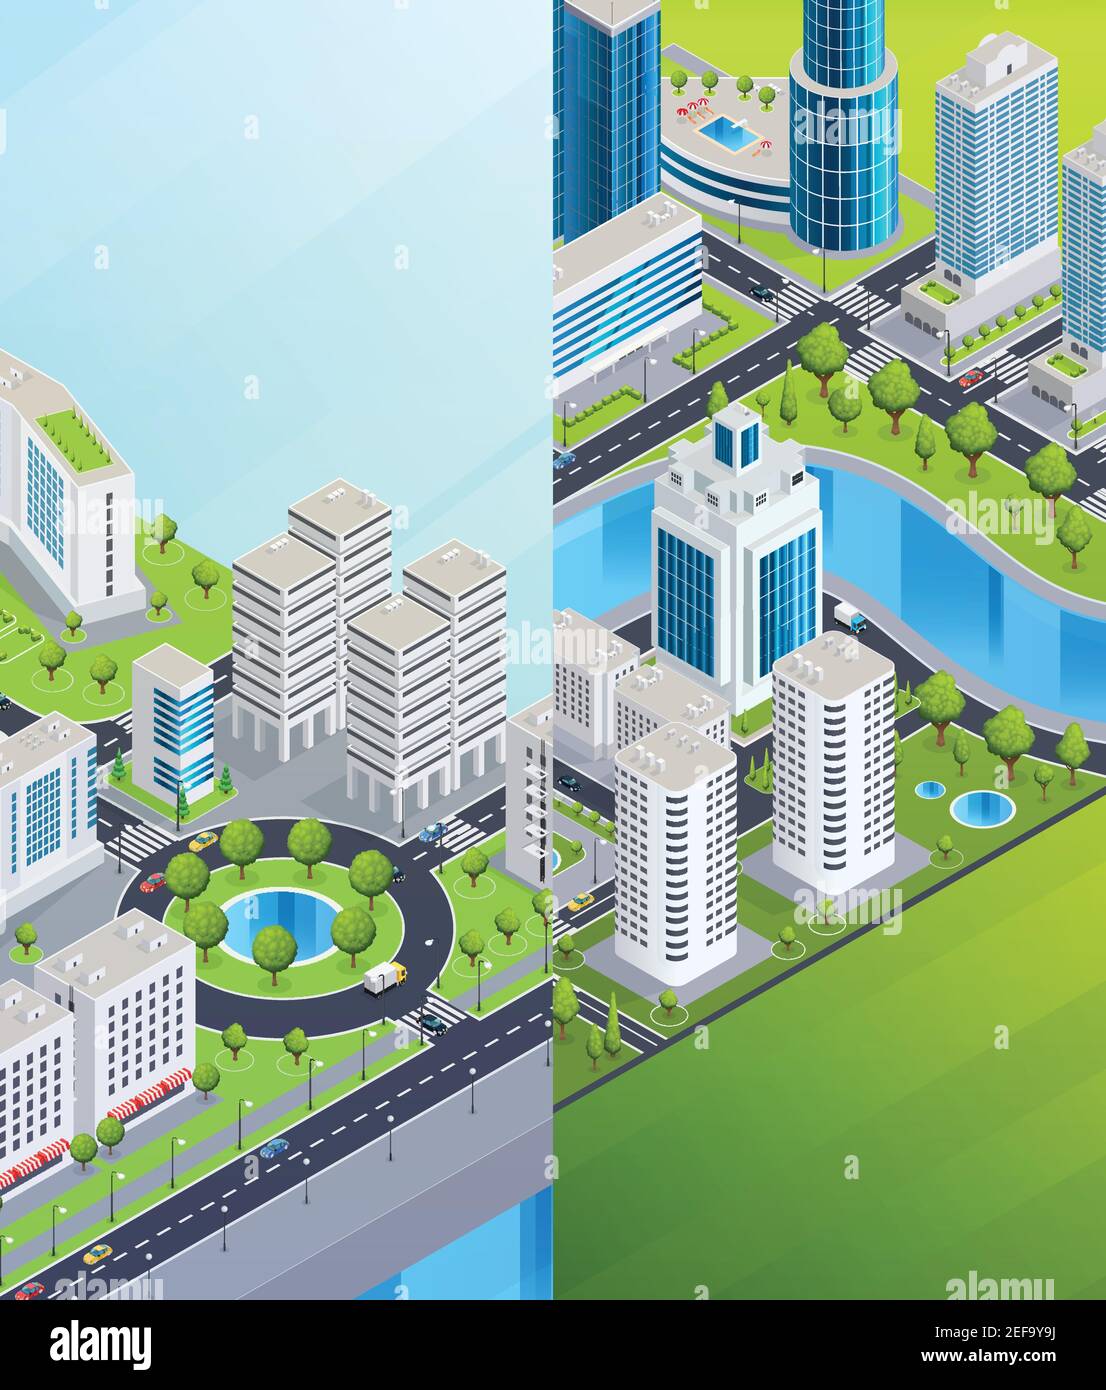 Infrastrutture cittadine banner verticali isometrici con grattacieli d'affari centri commerciali ed edifici residenziali illustrazione vettoriale Illustrazione Vettoriale